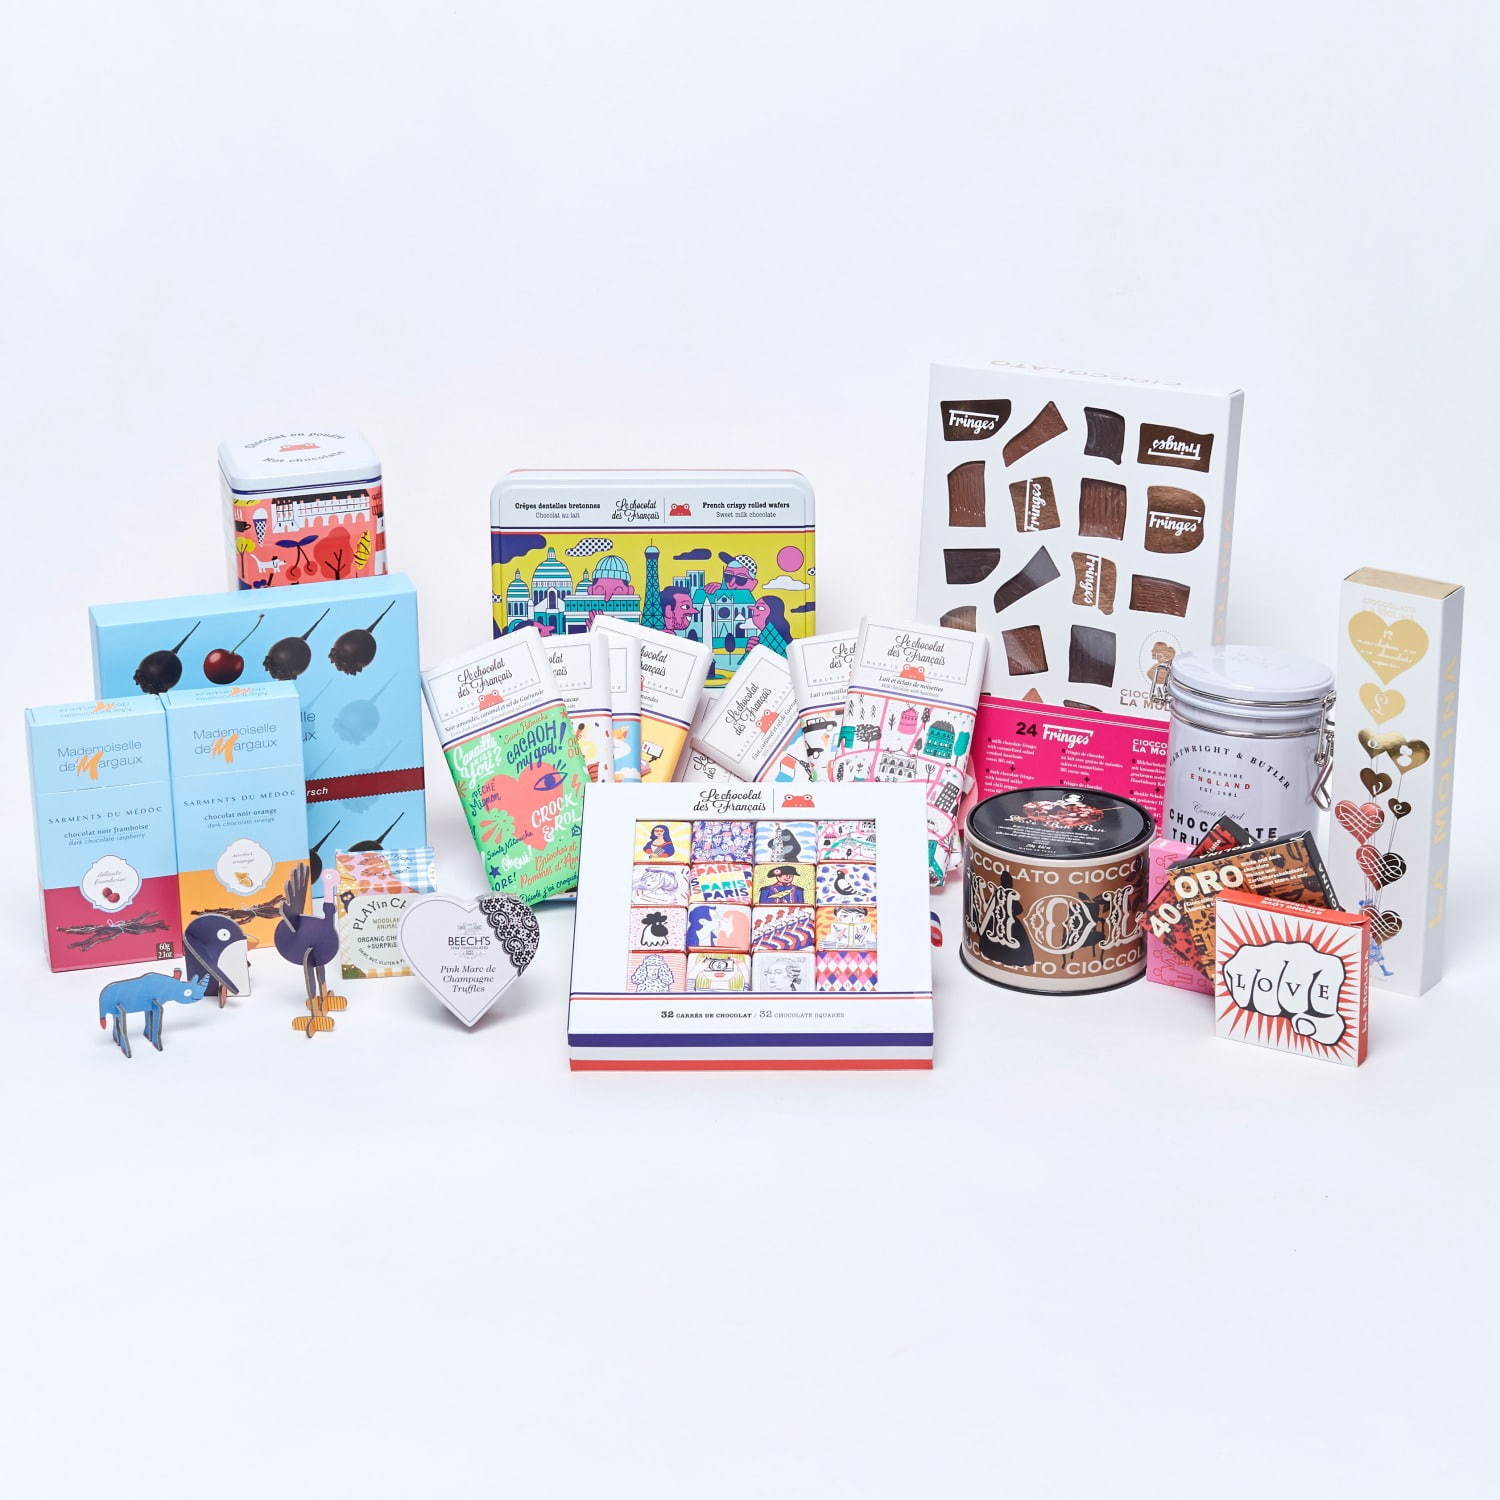 「ショコラマルシェ」全国のエストネーションで、日本初上陸ブランドほか世界の厳選チョコ集結